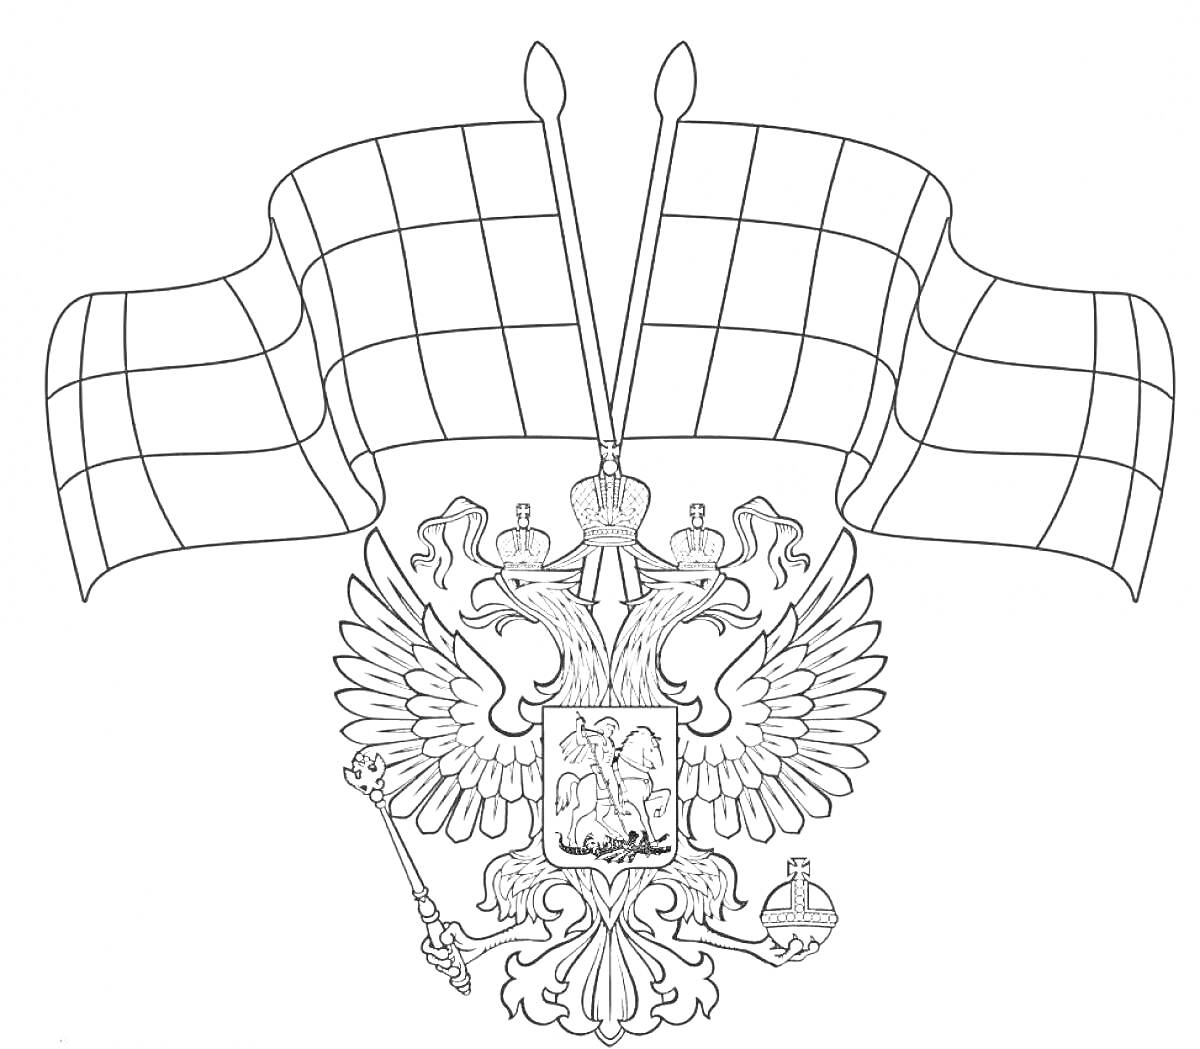 Герб России с двумя флагами, двуглавым орлом, сидящем всадником, державой, скипетром и коронами